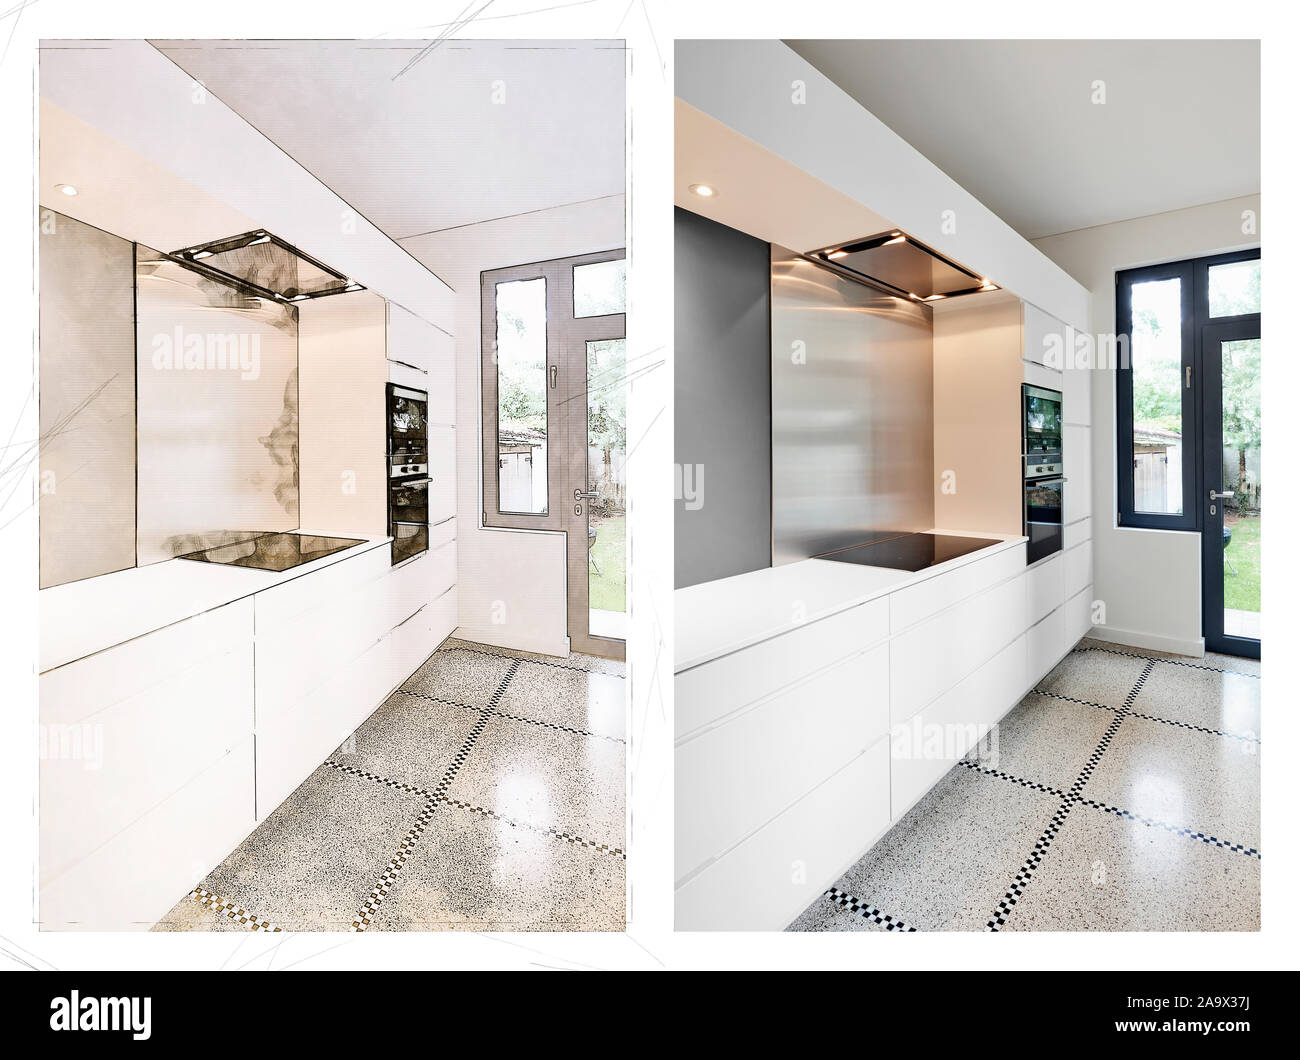 Immagine che mostra lo schizzo e il risultato di una elegante cucina moderna con interni in prospettiva Foto Stock